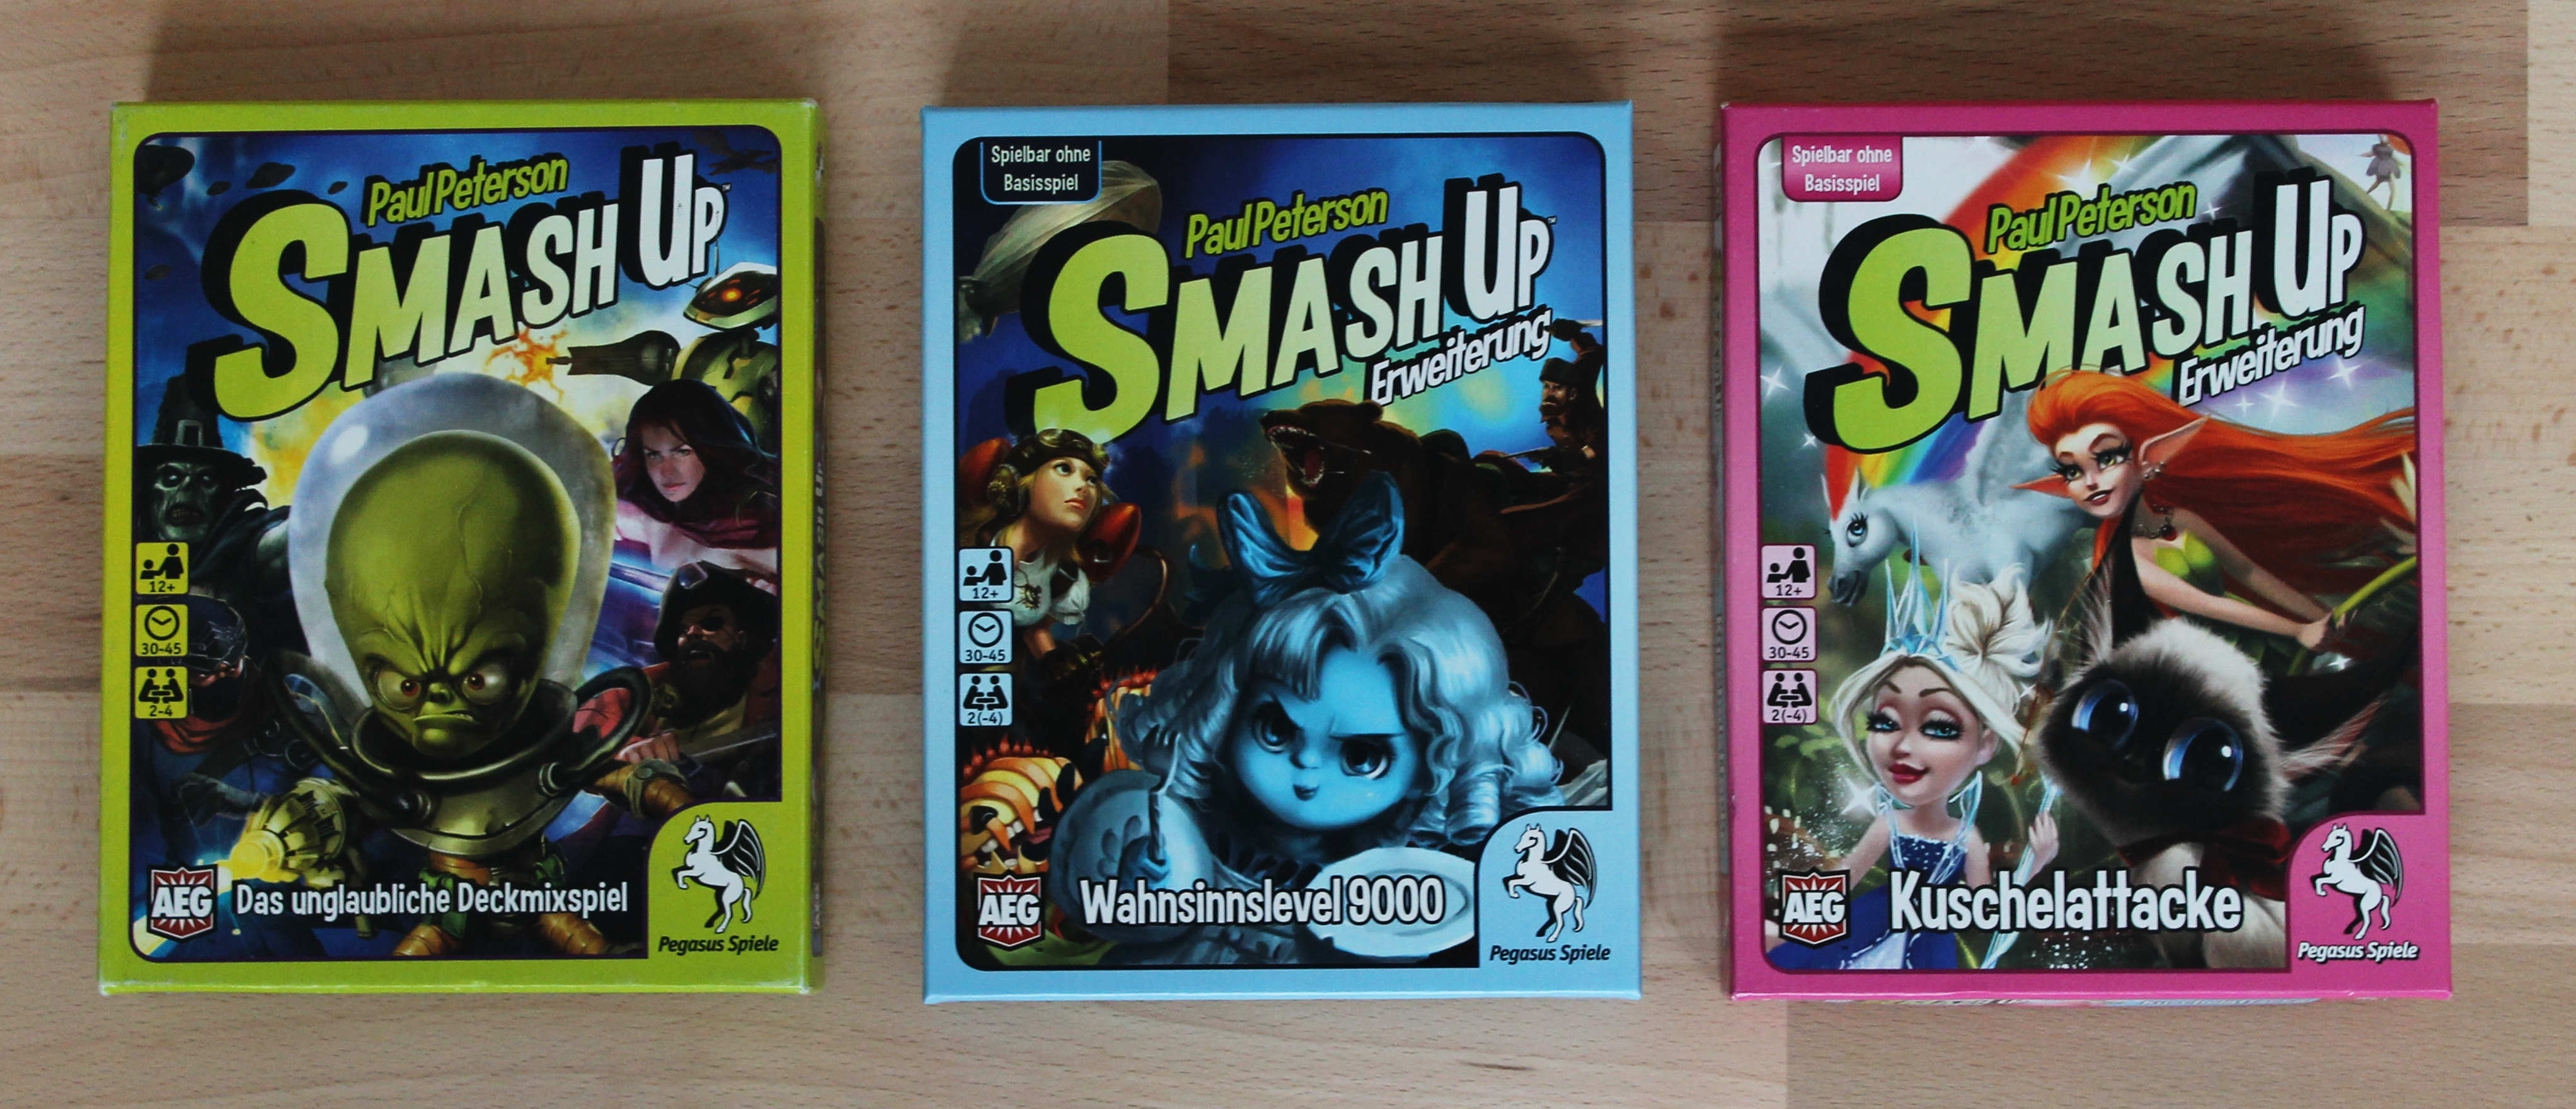 Abb.: Smash Up (2012), Spiel und Erweiterungen. Quelle: Eigene Abb.